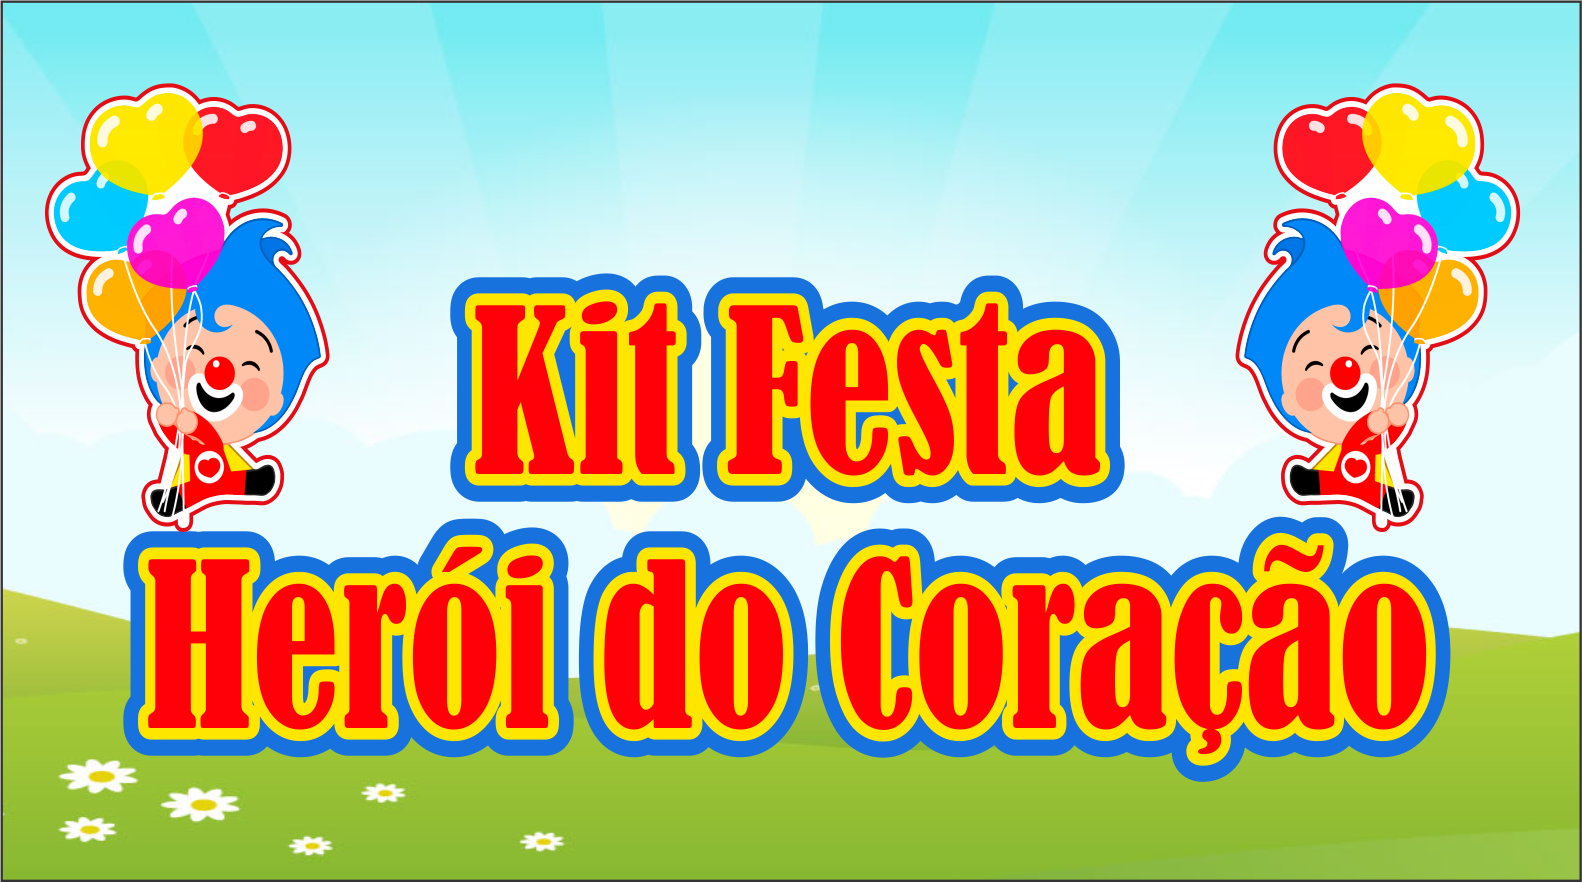 CAPA KIT FESTA HEROI DO CORACAO - Kit Festa Herói do Coração Pronto Para Imprimir